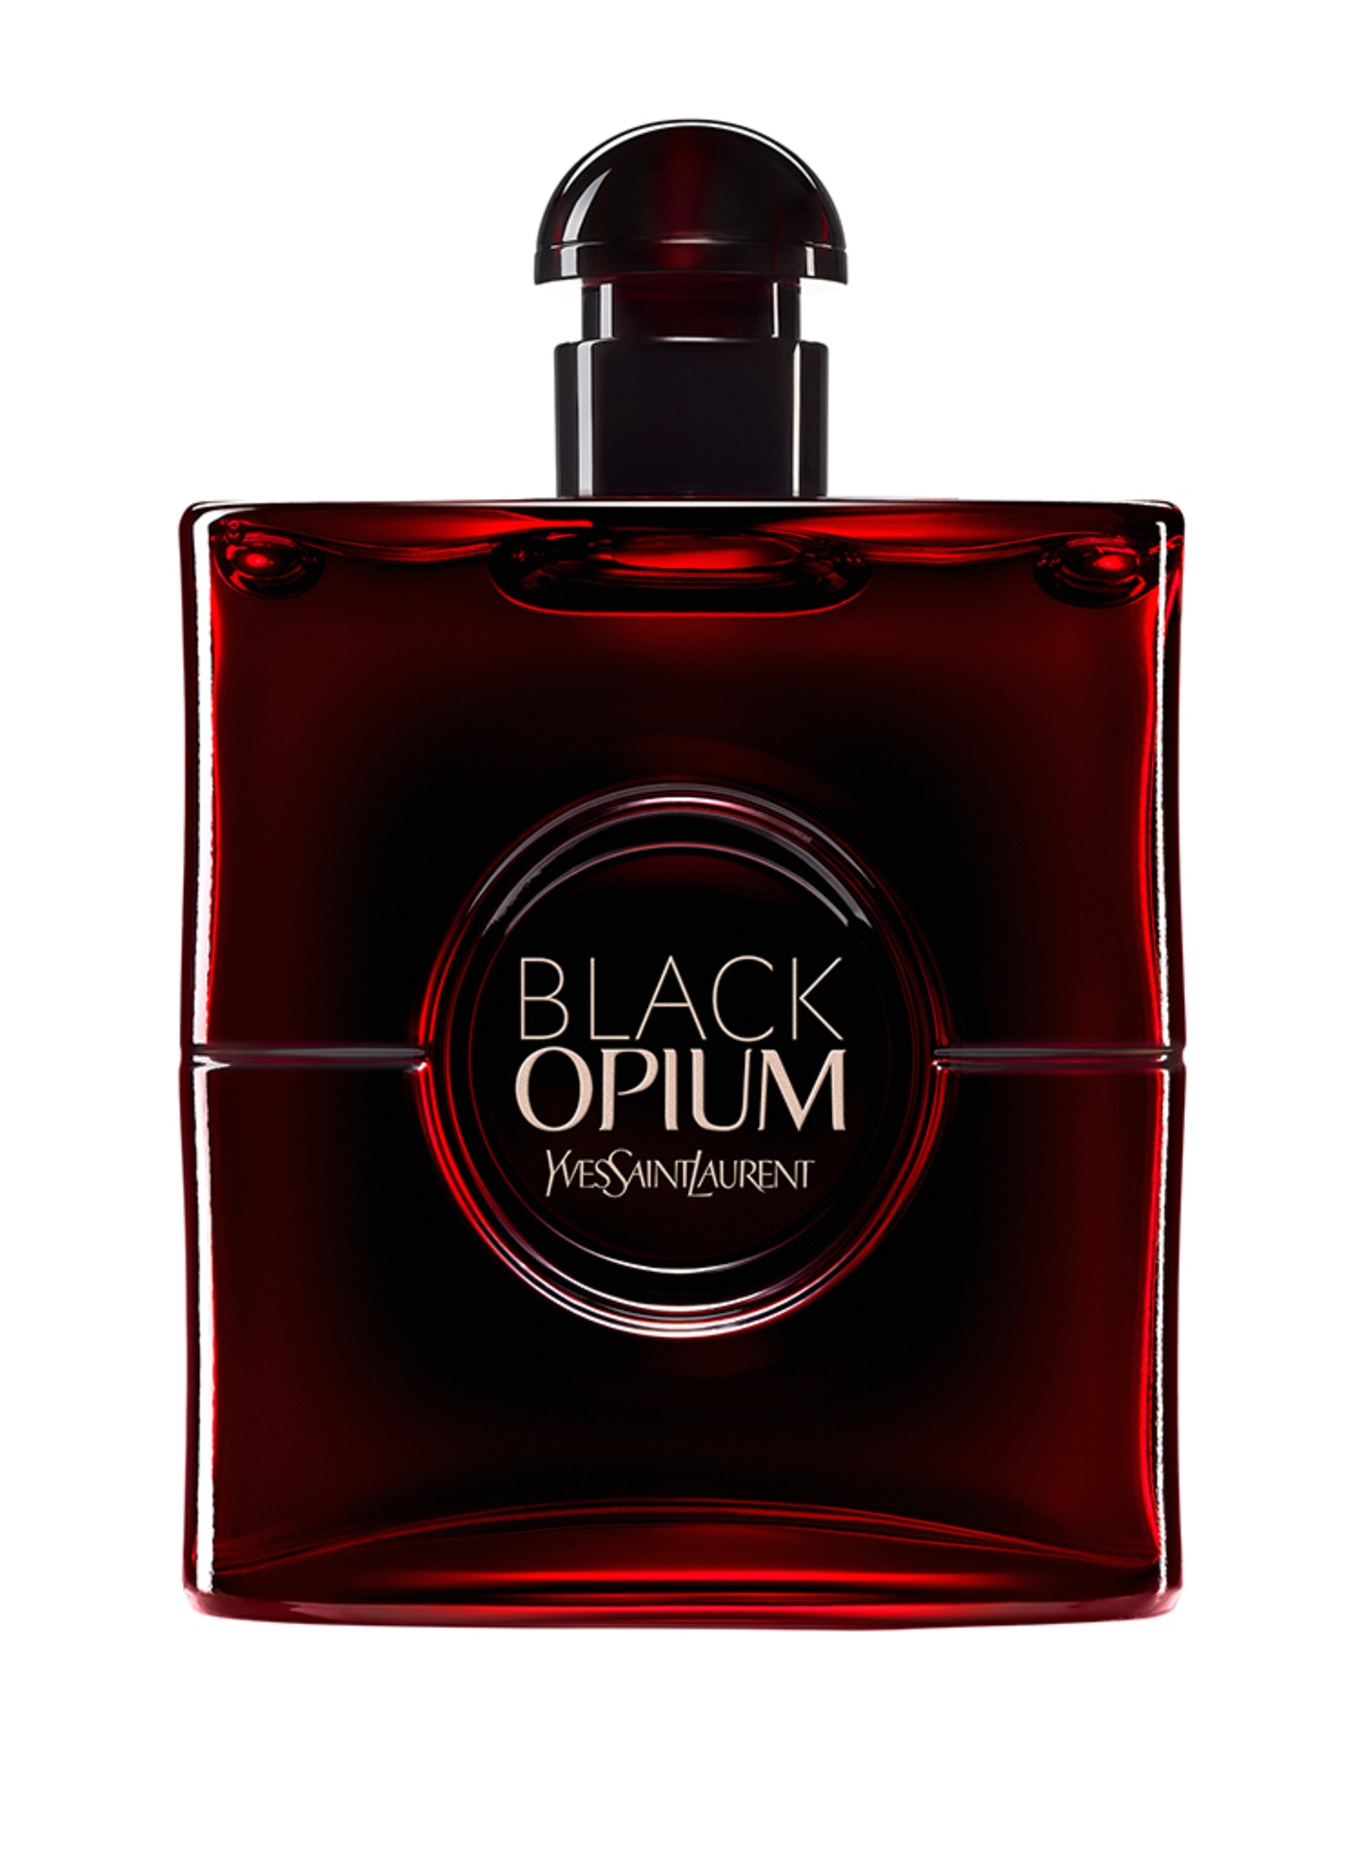 YVES SAINT LAURENT BEAUTÉ BLACK OPIUM OVER RED (Obrazek 1)